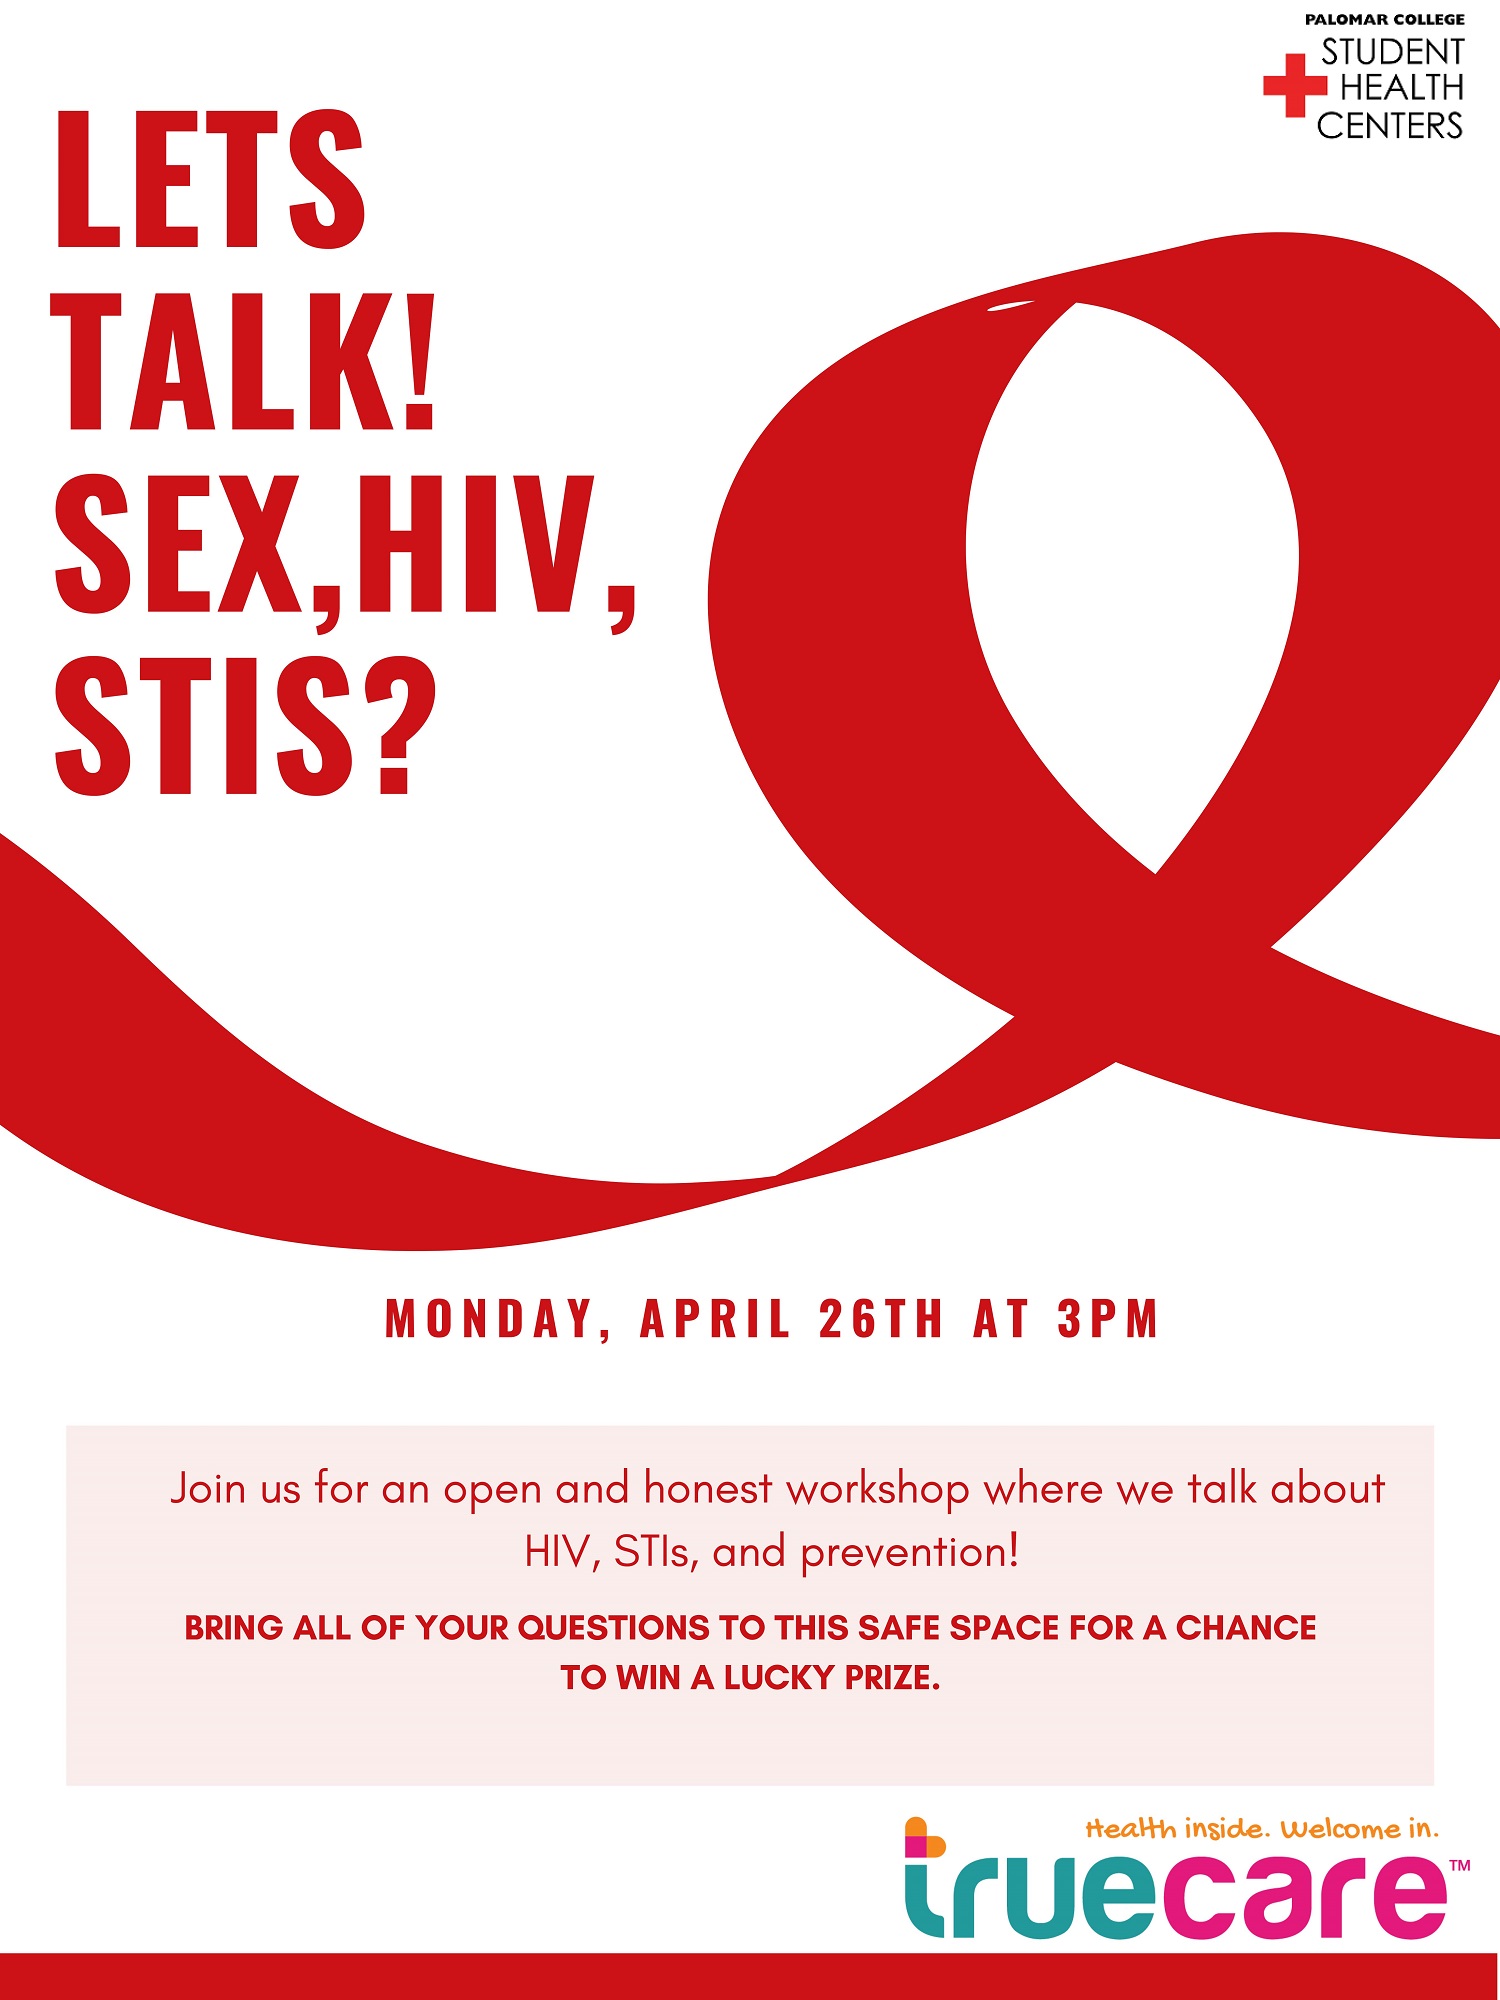 Workshop: Let's Talk! Sex, HIV, STIs?